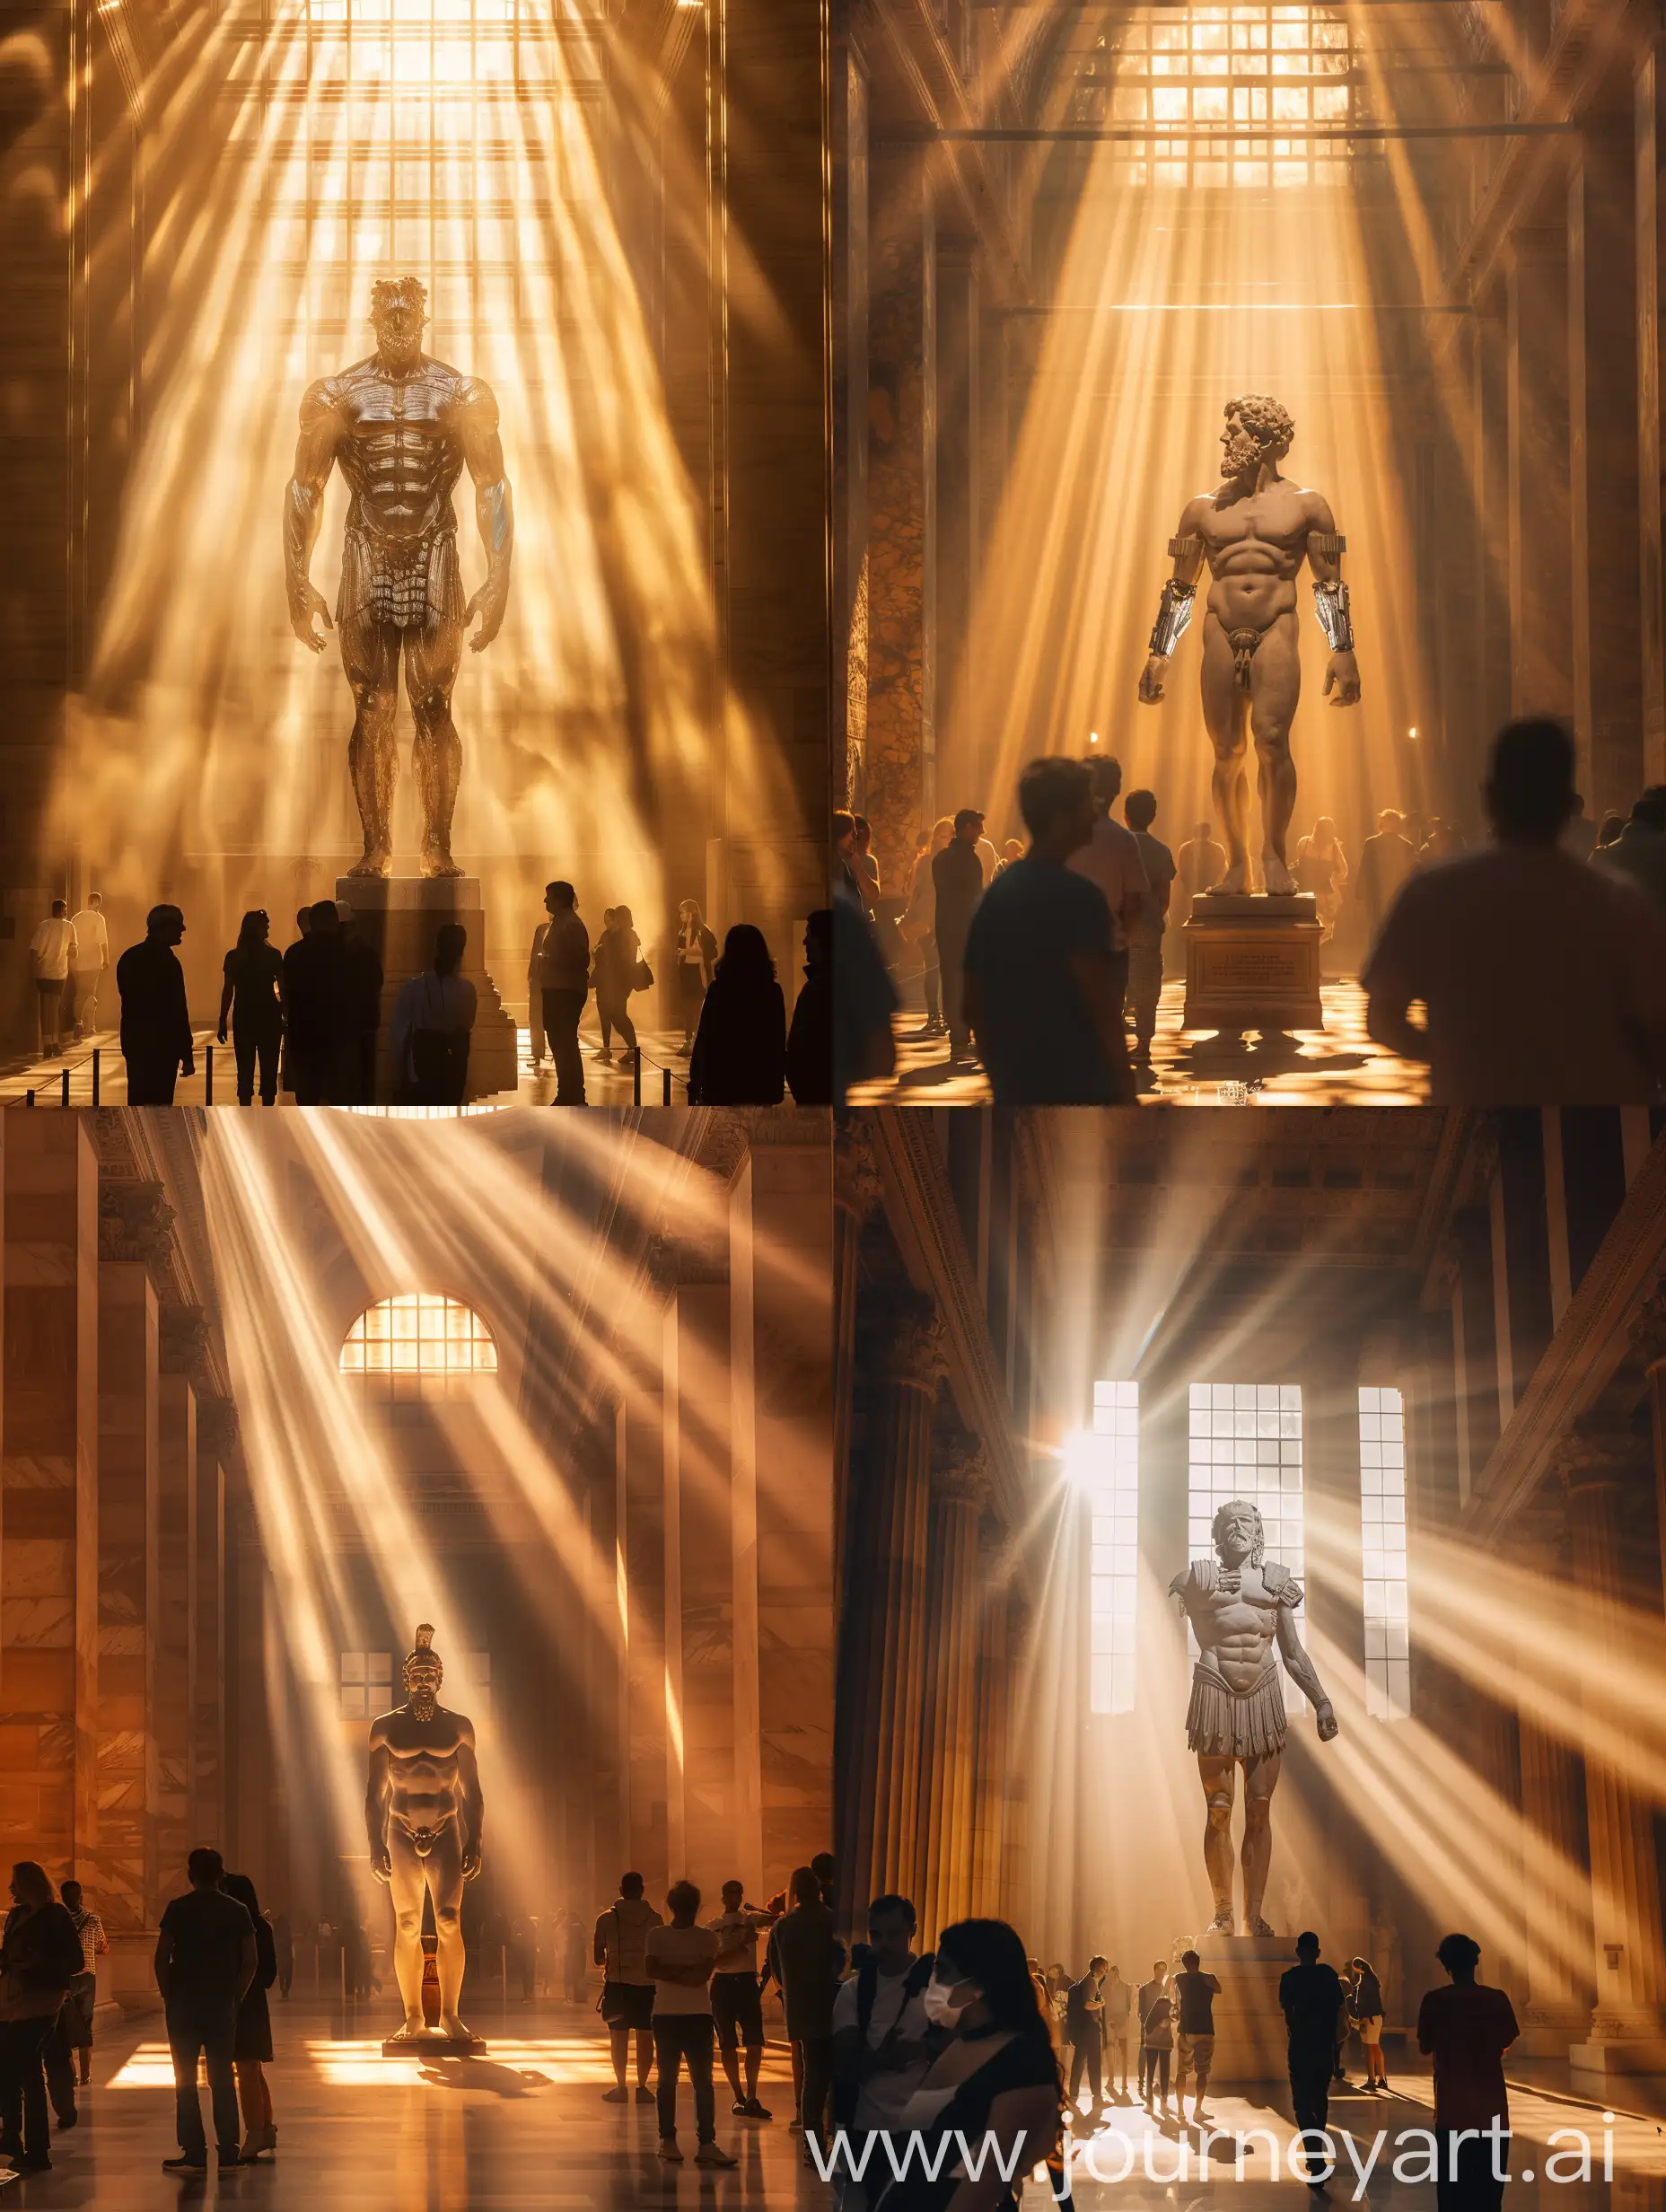 Divine-Encounter-Zeus-Sculpture-in-Ethereal-Museum-Hall